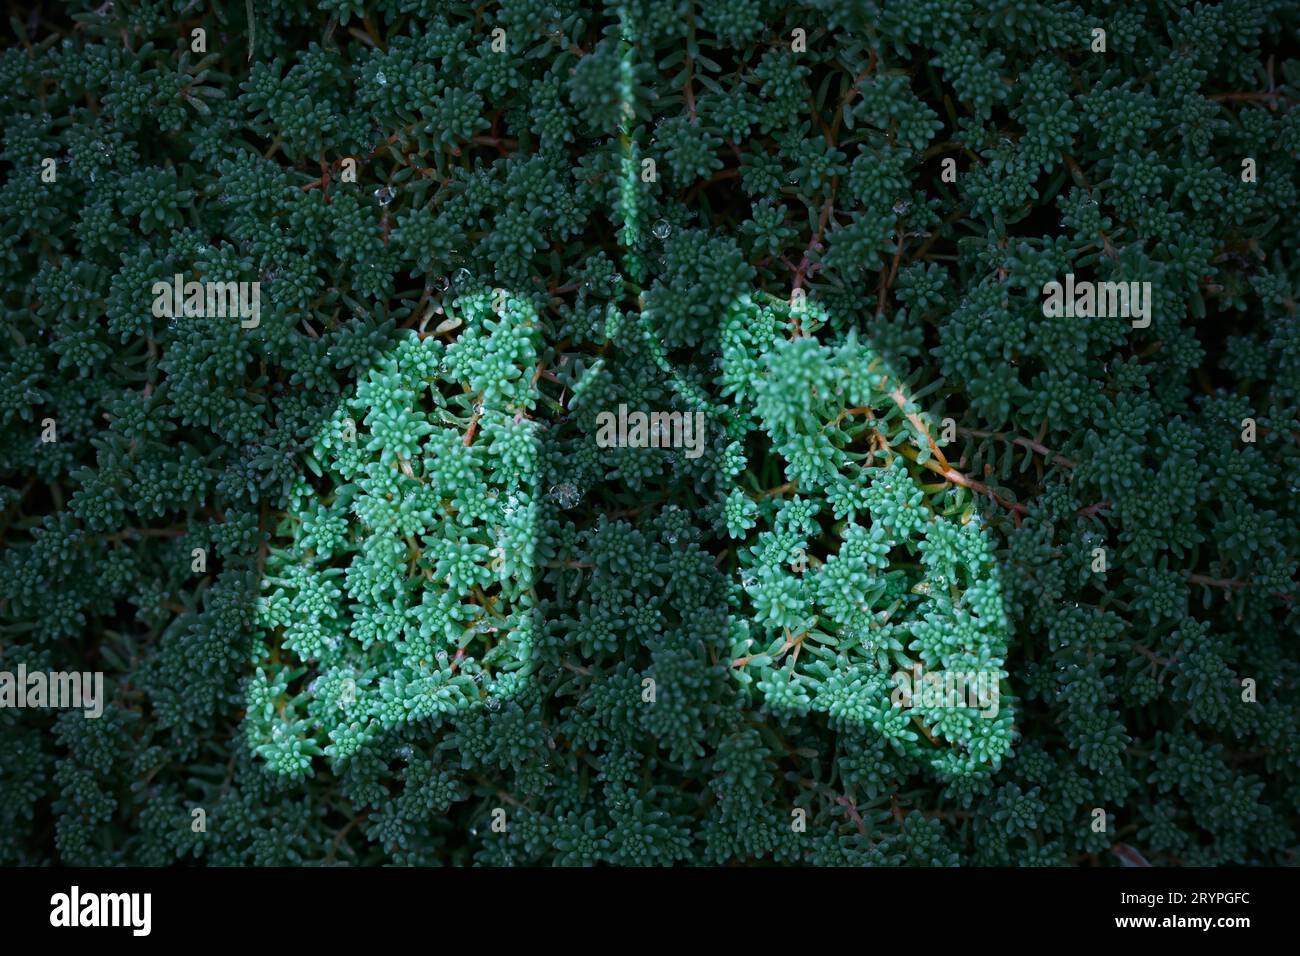 Grüngras- und Lungenform, Konzept zur Reduzierung der CO2-Bilanz, Umweltschutz Stockfoto